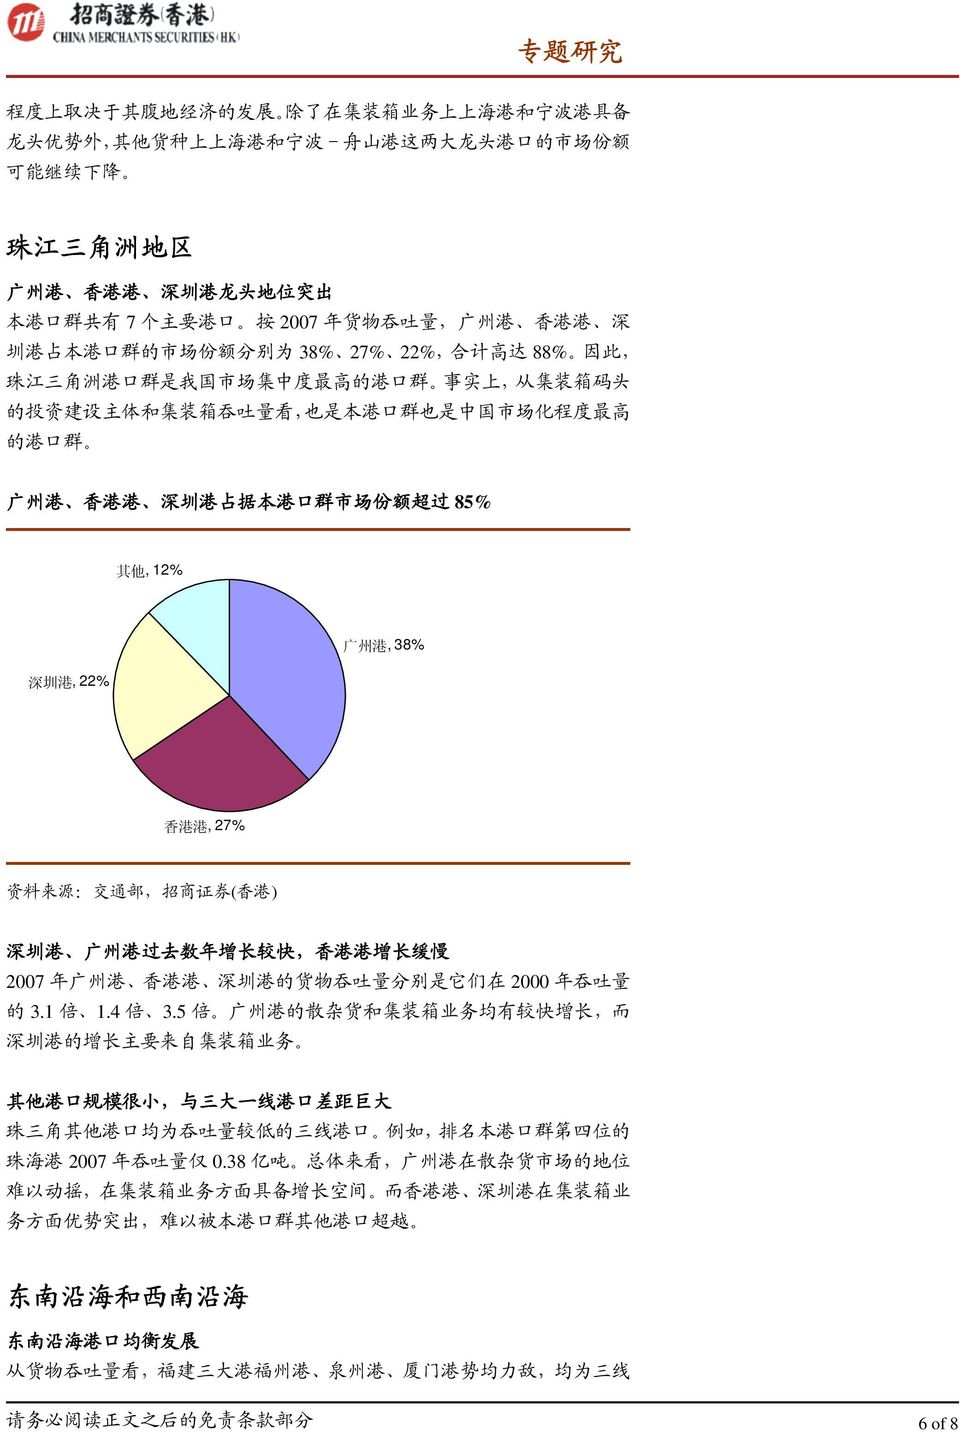 是 本 港 口 群 也 是 中 国 市 场 化 程 度 最 高 的 港 口 群 广 州 港 香 港 港 深 圳 港 占 据 本 港 口 群 市 场 份 额 超 过 85% 其 他, 12% 深 圳 港, 22% 广 州 港, 38% 香 港 港, 27% 资 料 来 源 : 交 通 部, 招 商 证 券 ( 香 港 ) 深 圳 港 广 州 港 过 去 数 年 增 长 较 快, 香 港 港 增 长